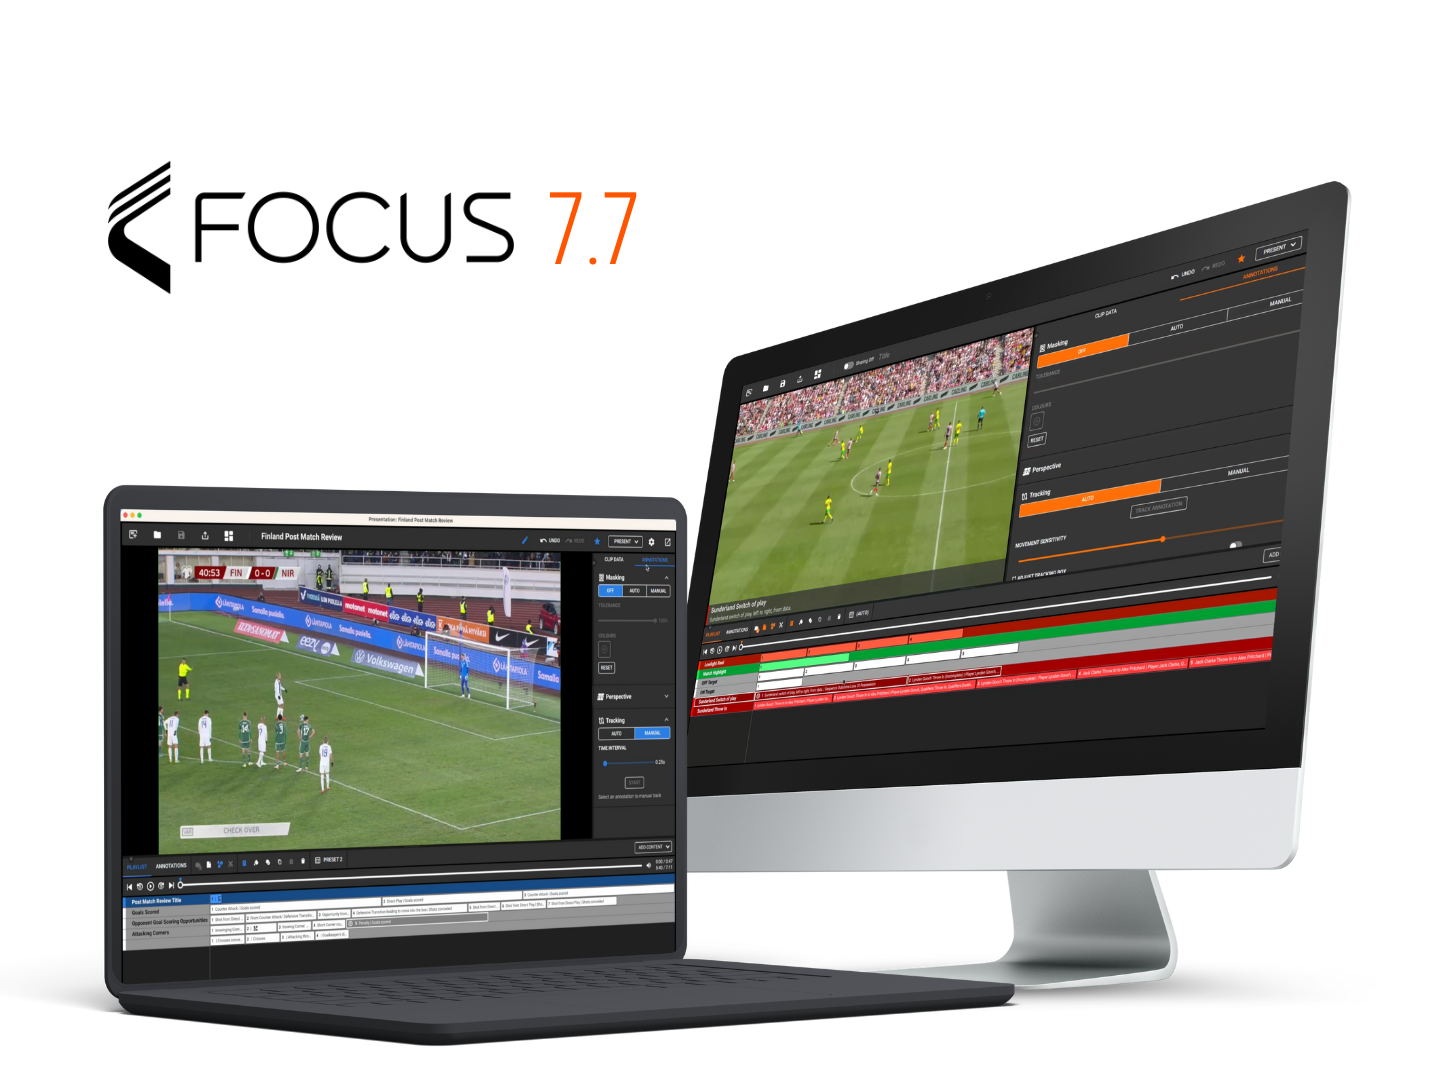 Varios dispositivos, incluidos una computadora portátil, una computadora de escritorio y un teléfono inteligente, muestran interfaces de análisis de fútbol desde la plataforma Focus 7.7. Los dispositivos están dispuestos en un patrón circular con un fondo naranja.